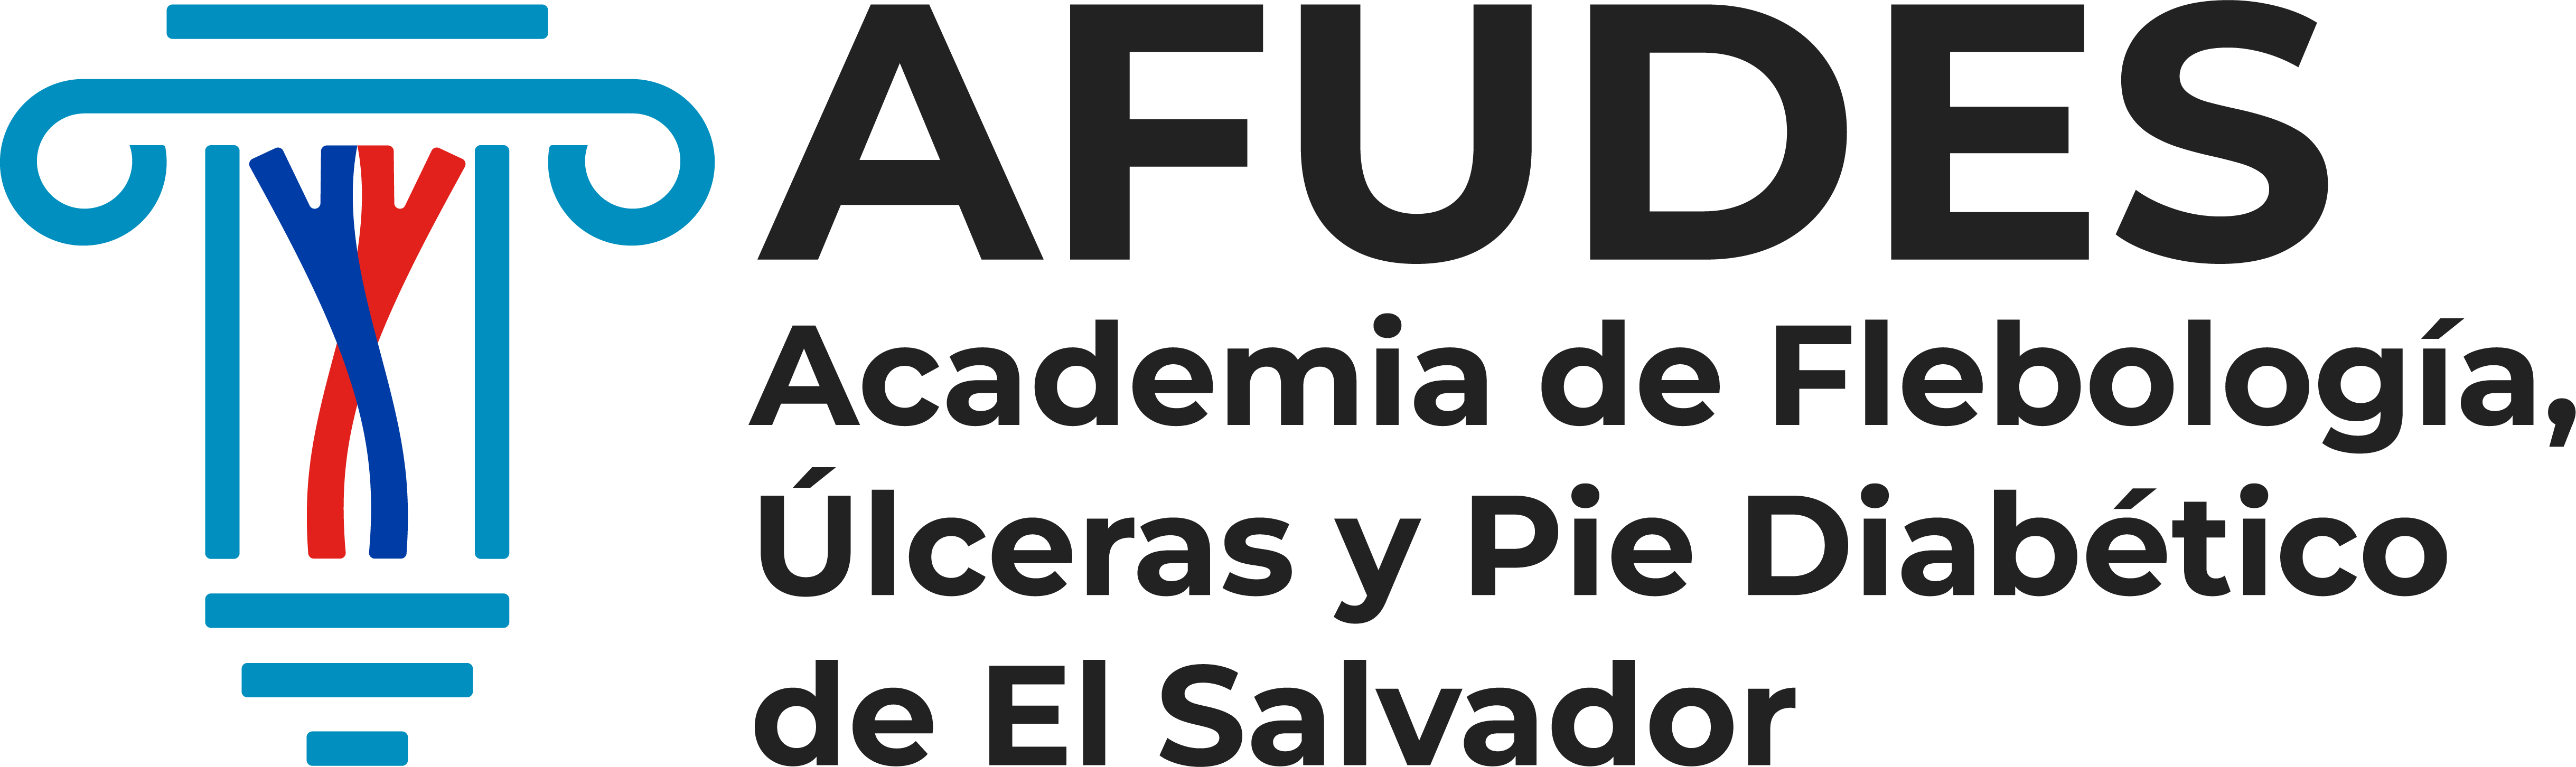 AFUDES | Academia de Flebología, Úlceras y Pie Diabético de El Salvador